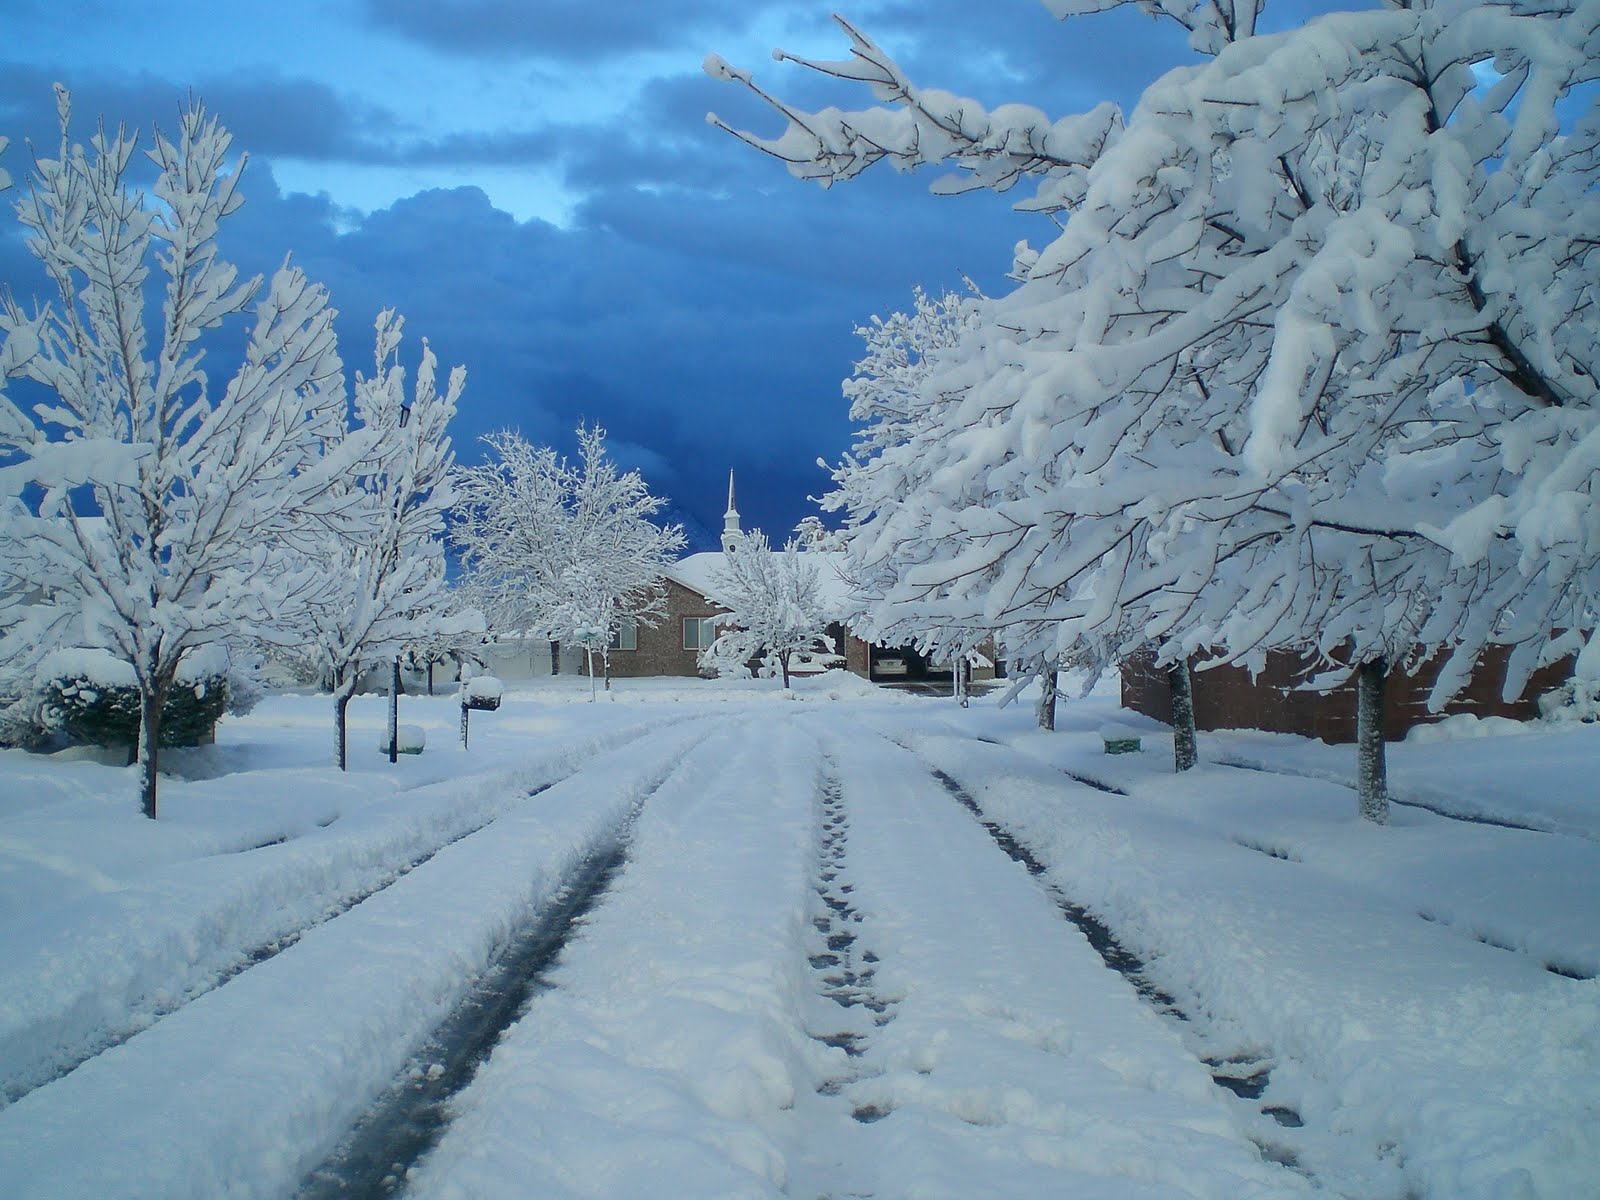 Snow is beautiful. Красивые картинки зимы западных стран. Юго Западный зимой ЕК,.